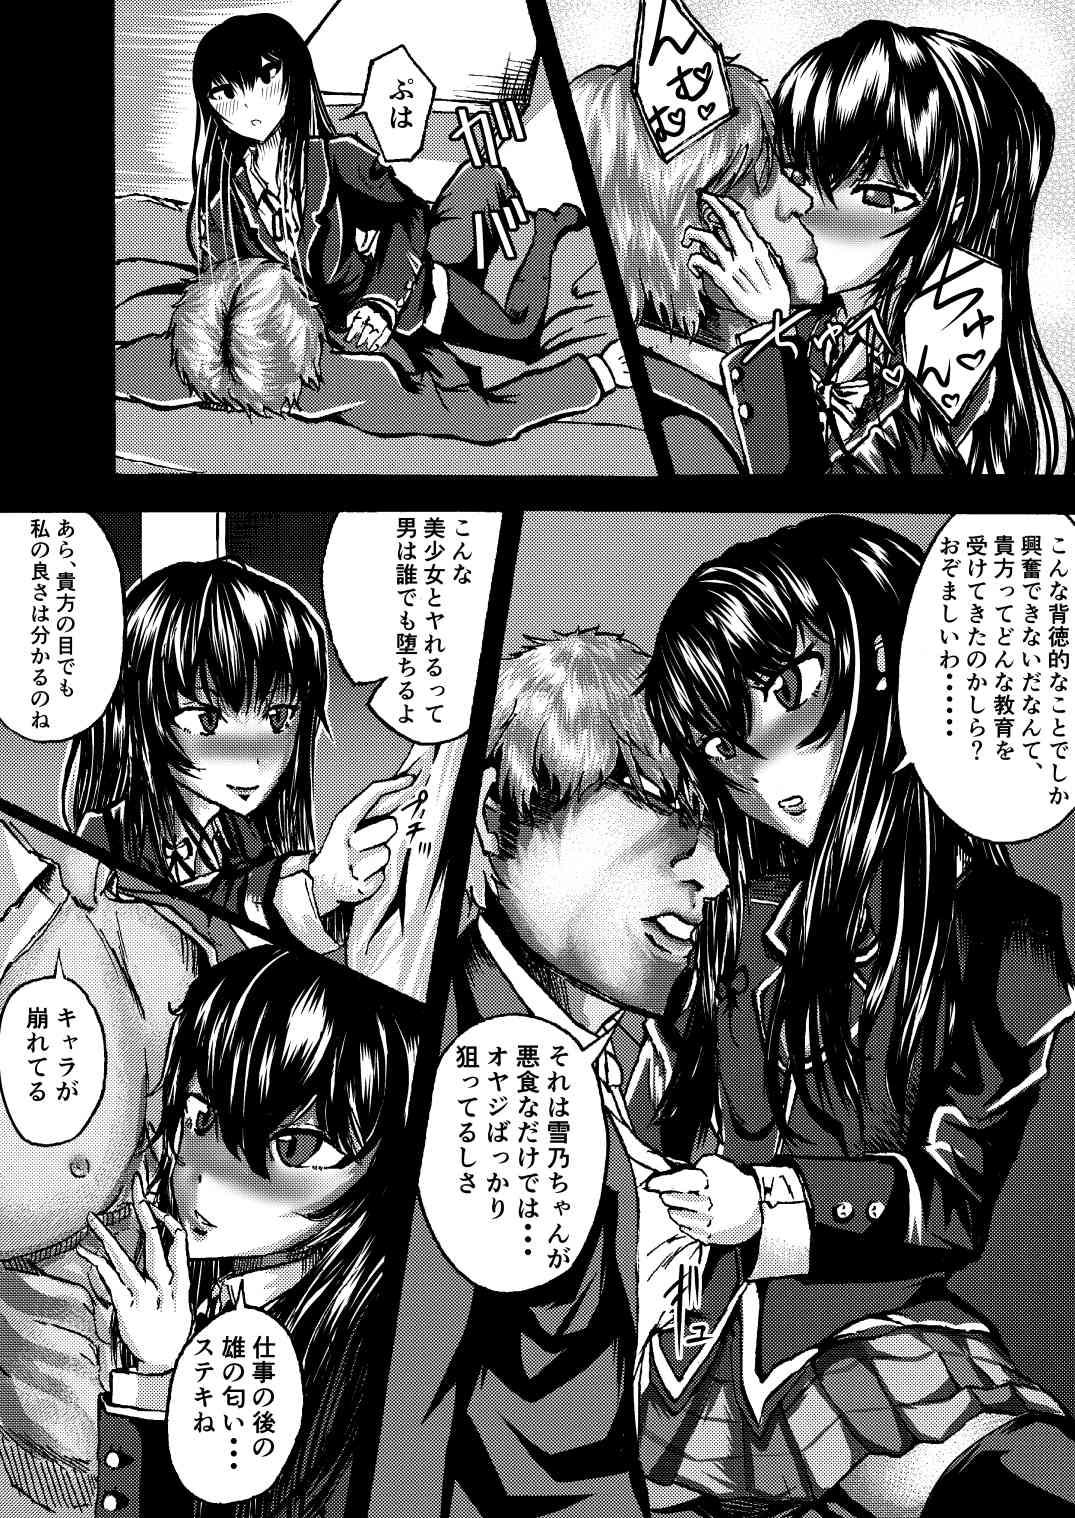 Stepsiblings Yukinon to SEX Shitain daro!? - Yahari ore no seishun love come wa machigatteiru Lez Fuck - Page 5